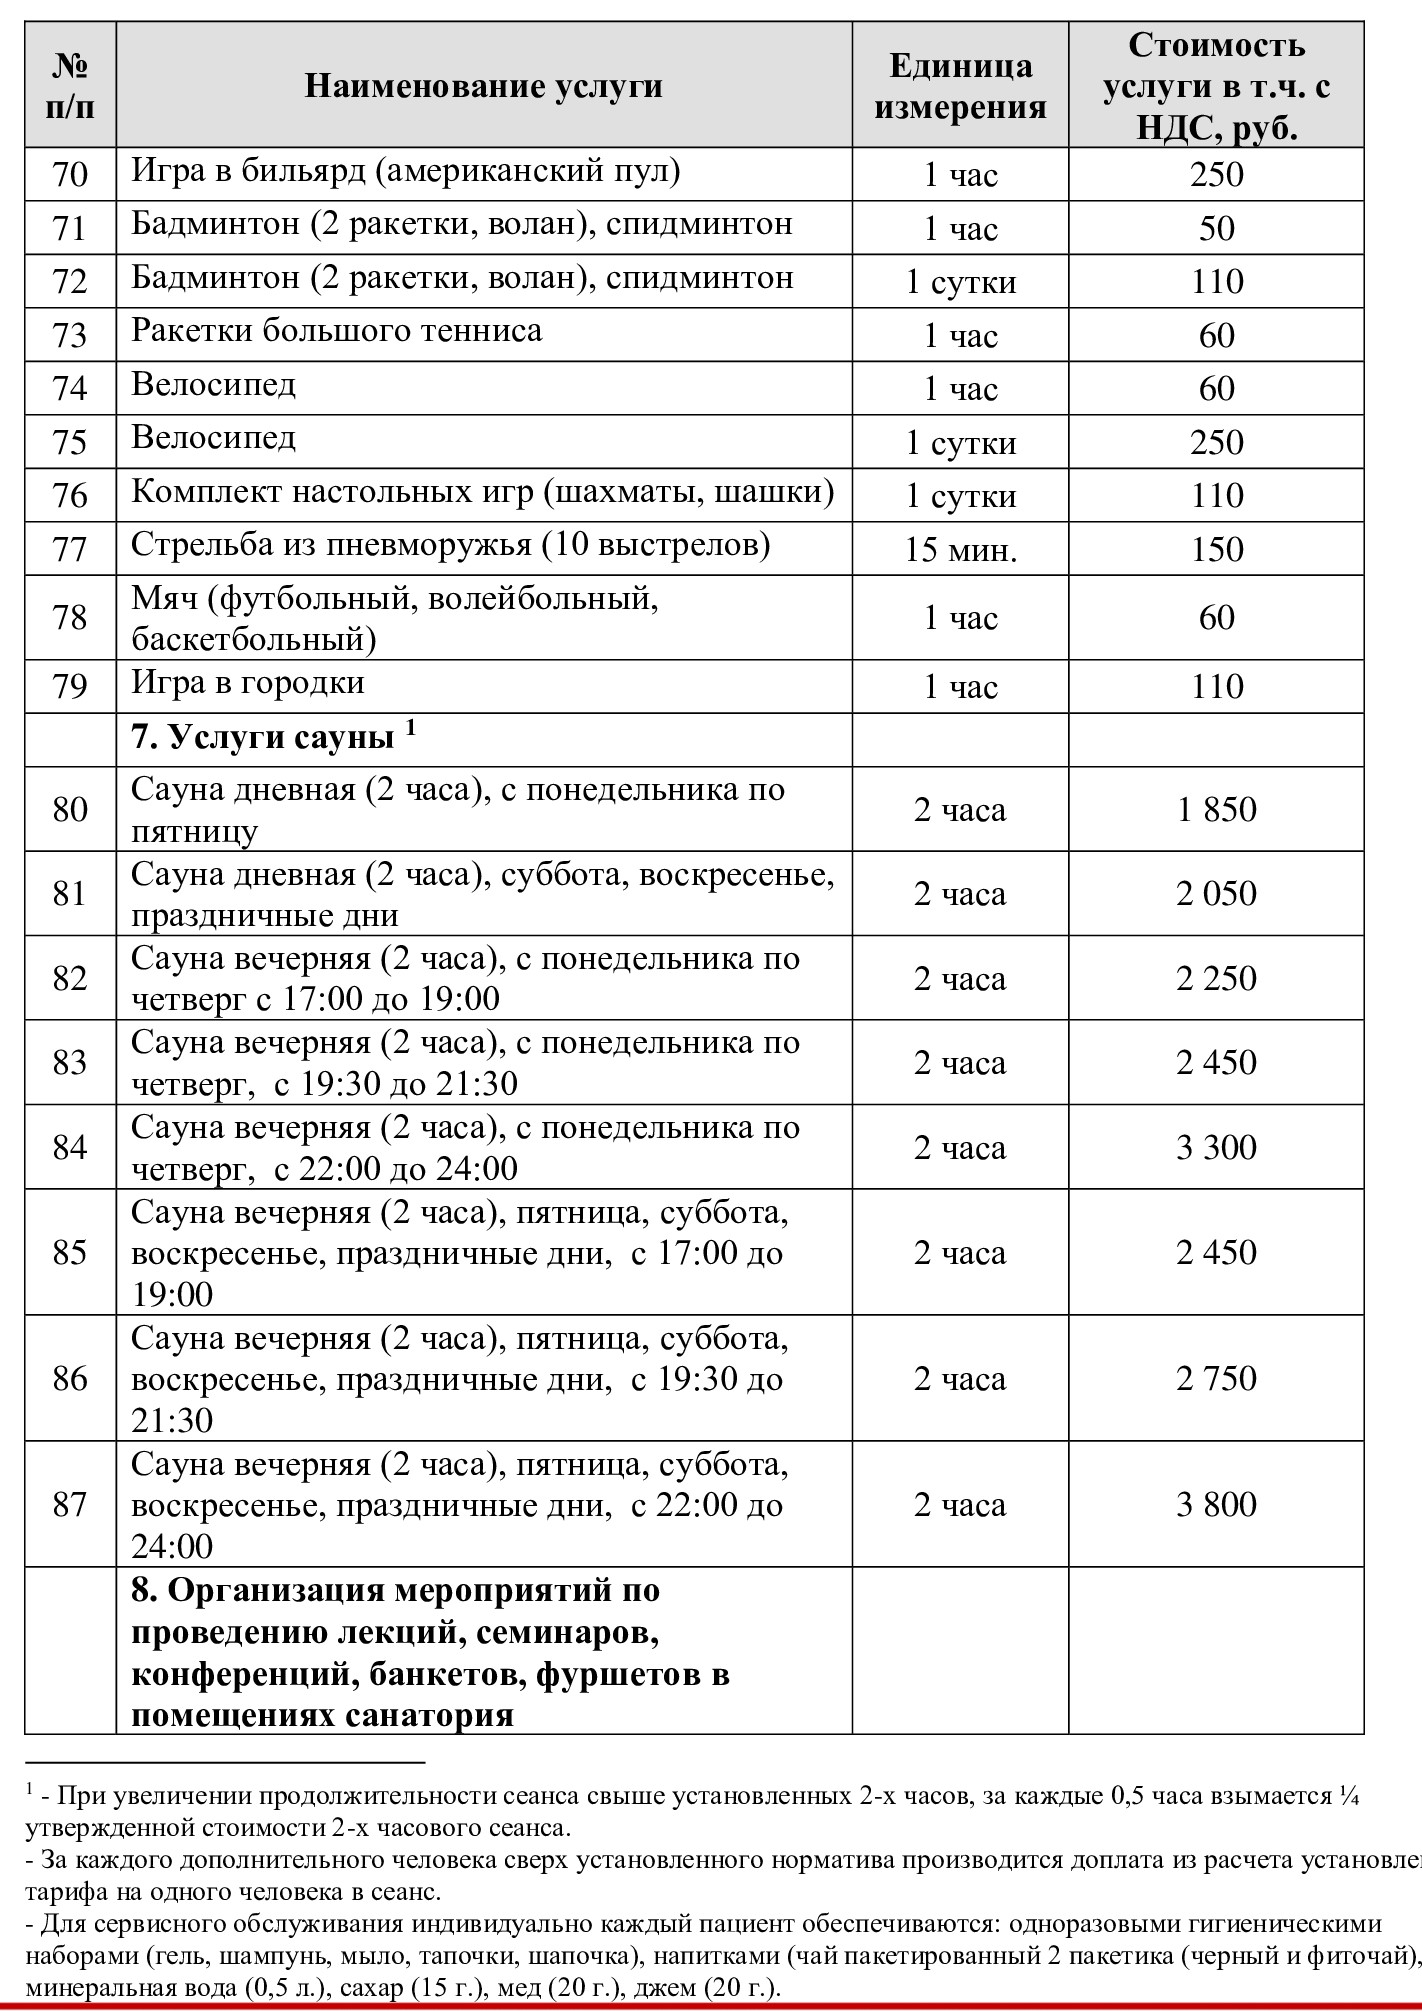 Цены на экскурсии из Санатория "Введенское" (Звенигород)